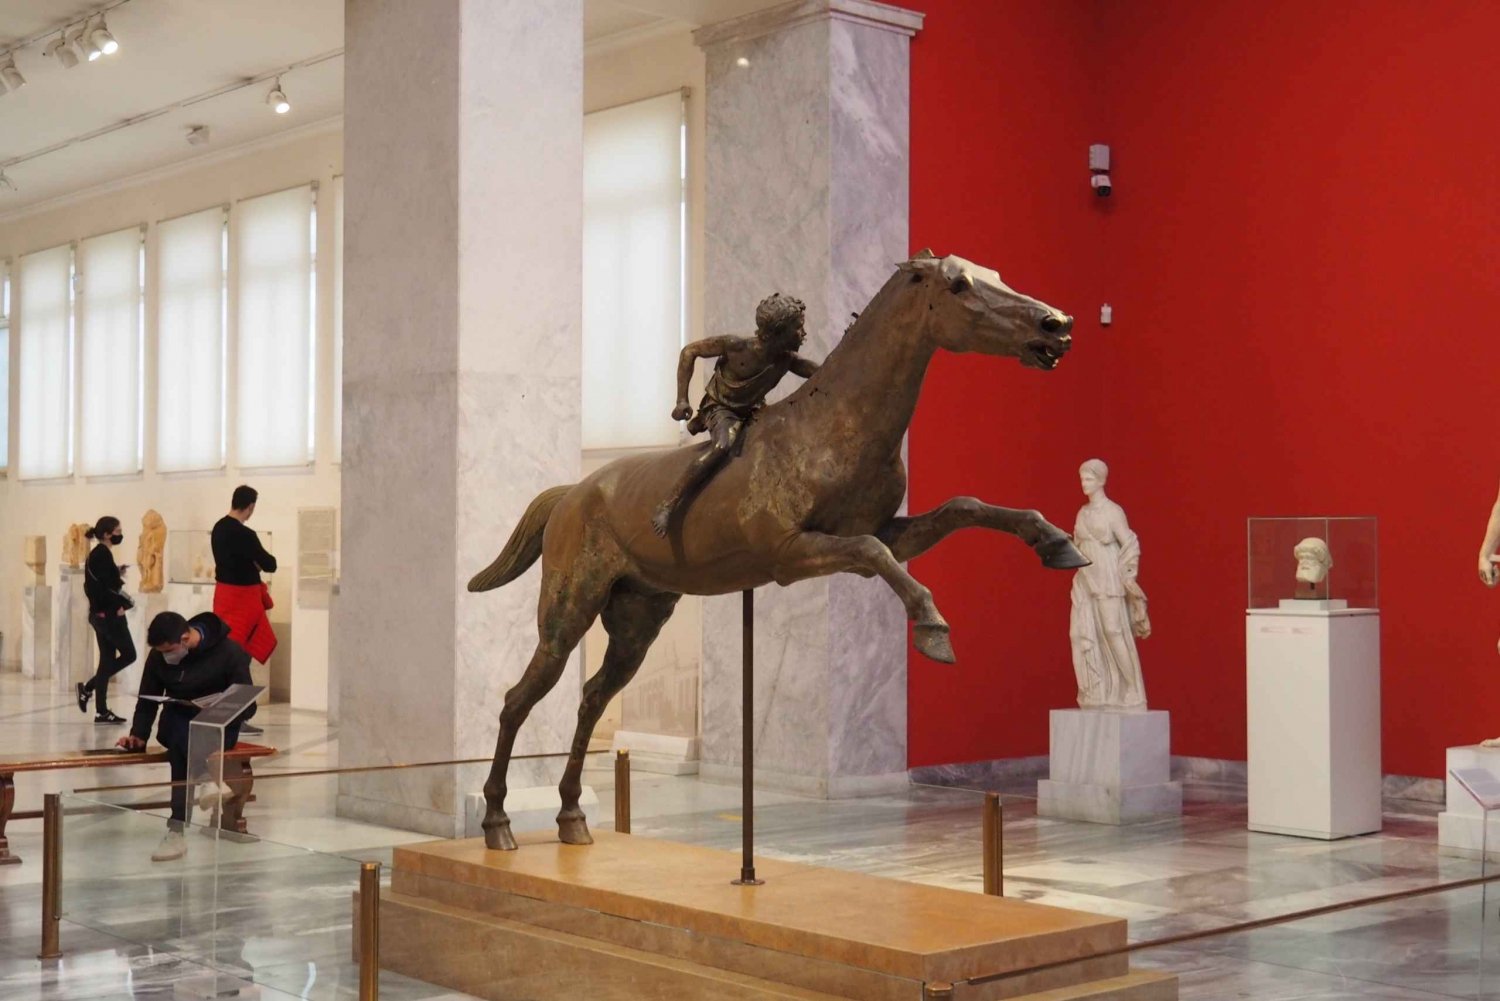 Atenas: Ingresso para o Museu Arqueológico Nacional